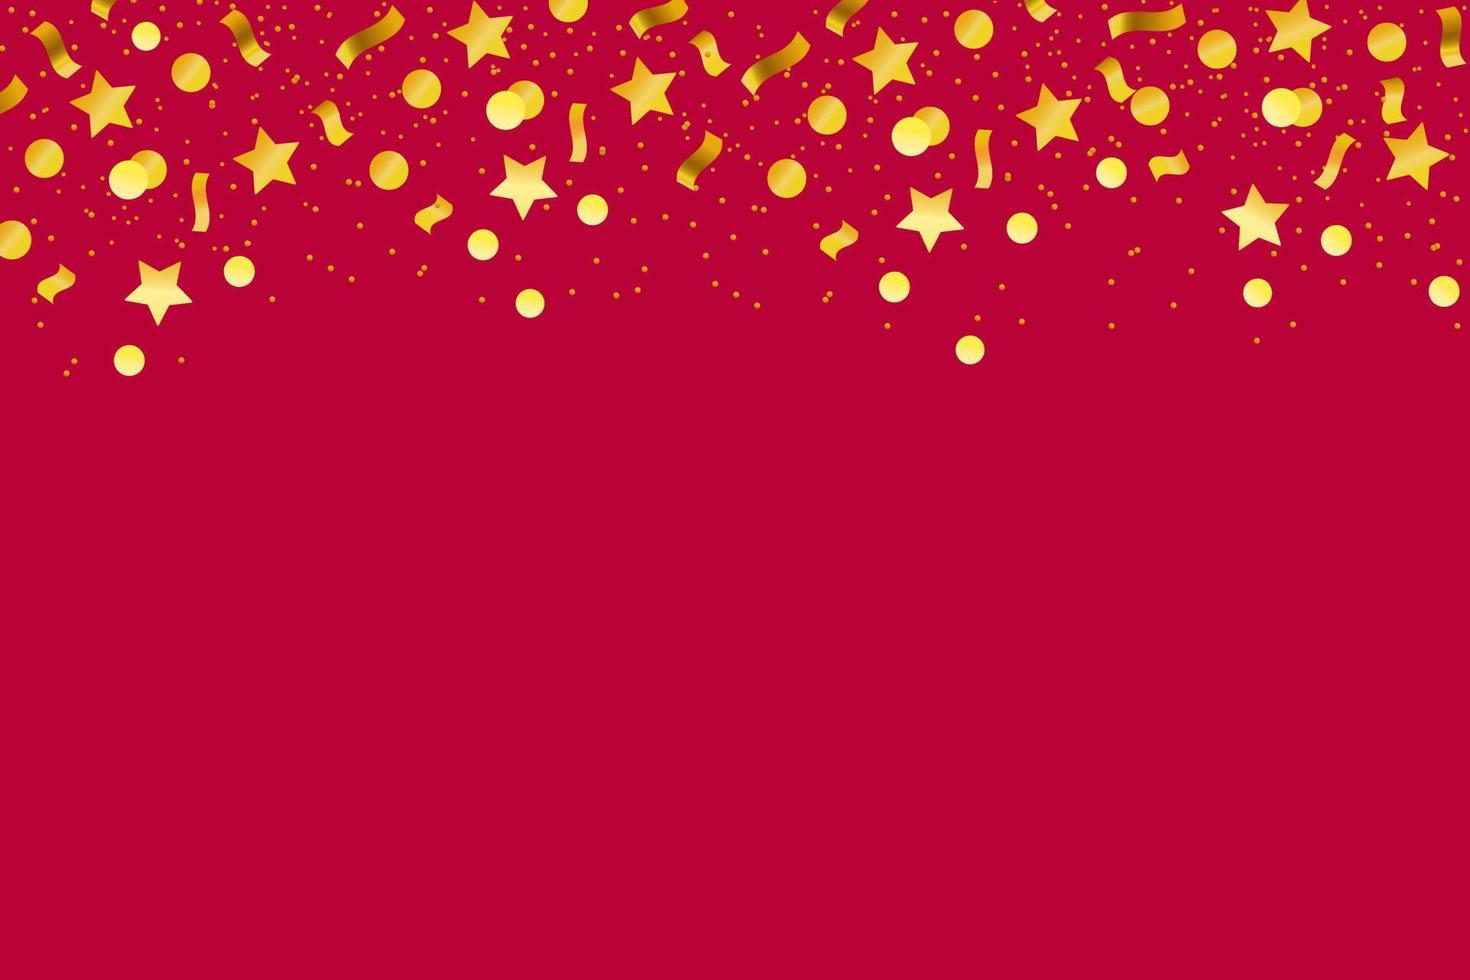 carnaval de fogos de artifício de confete e papel. fita estrela círculo de cores douradas. ilustração vetorial em um fundo vermelho horizontal. estilo de desenho animado. vetor